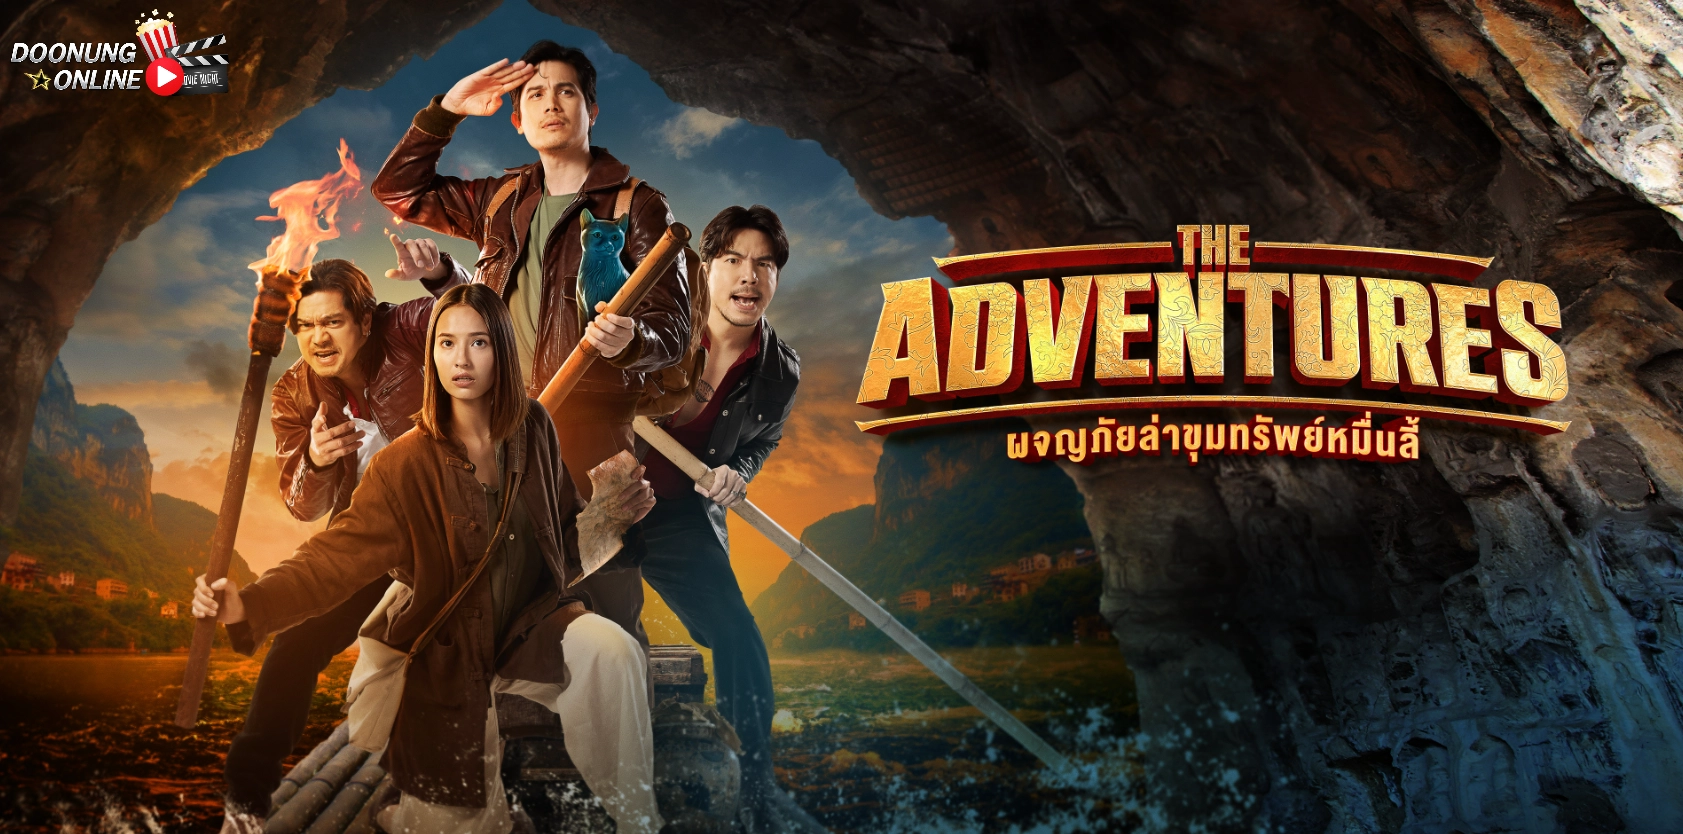 รีวิว The Adventures ผจญภัยล่าขุมทรัพย์หมื่นลี้ | หนังไทยขายเซอร์วิสแฟน Prime ด้วยทัพนักแสดงระดับประเทศ